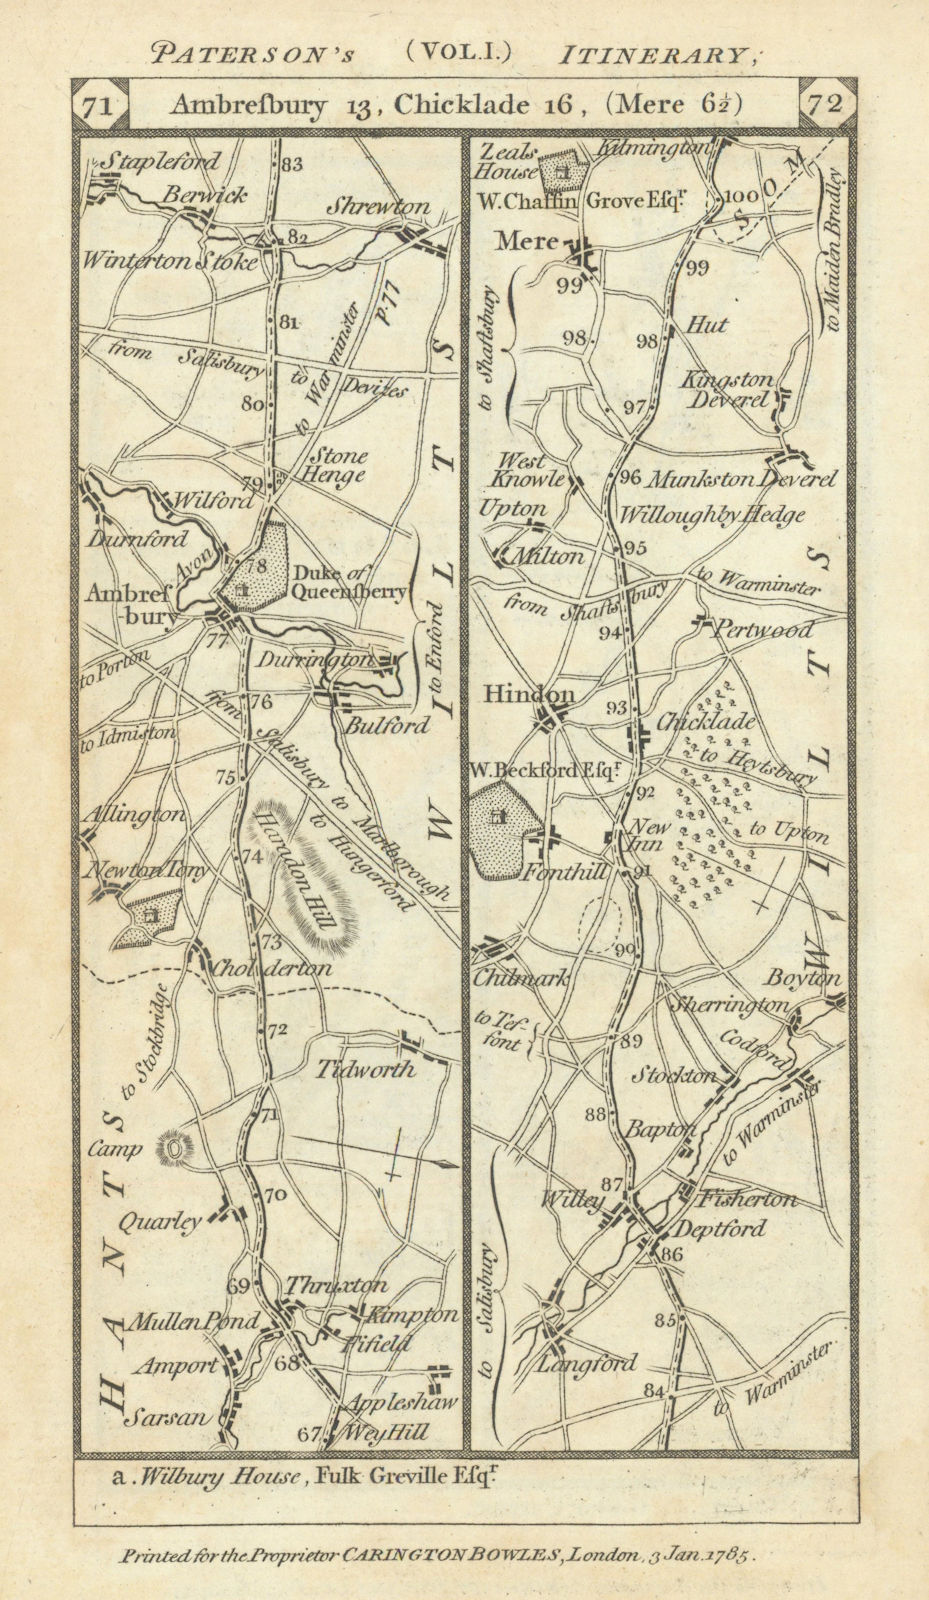 Thruxton-Durrington-Amesbury-Wylye-Hindon-Mere road strip map PATERSON 1785